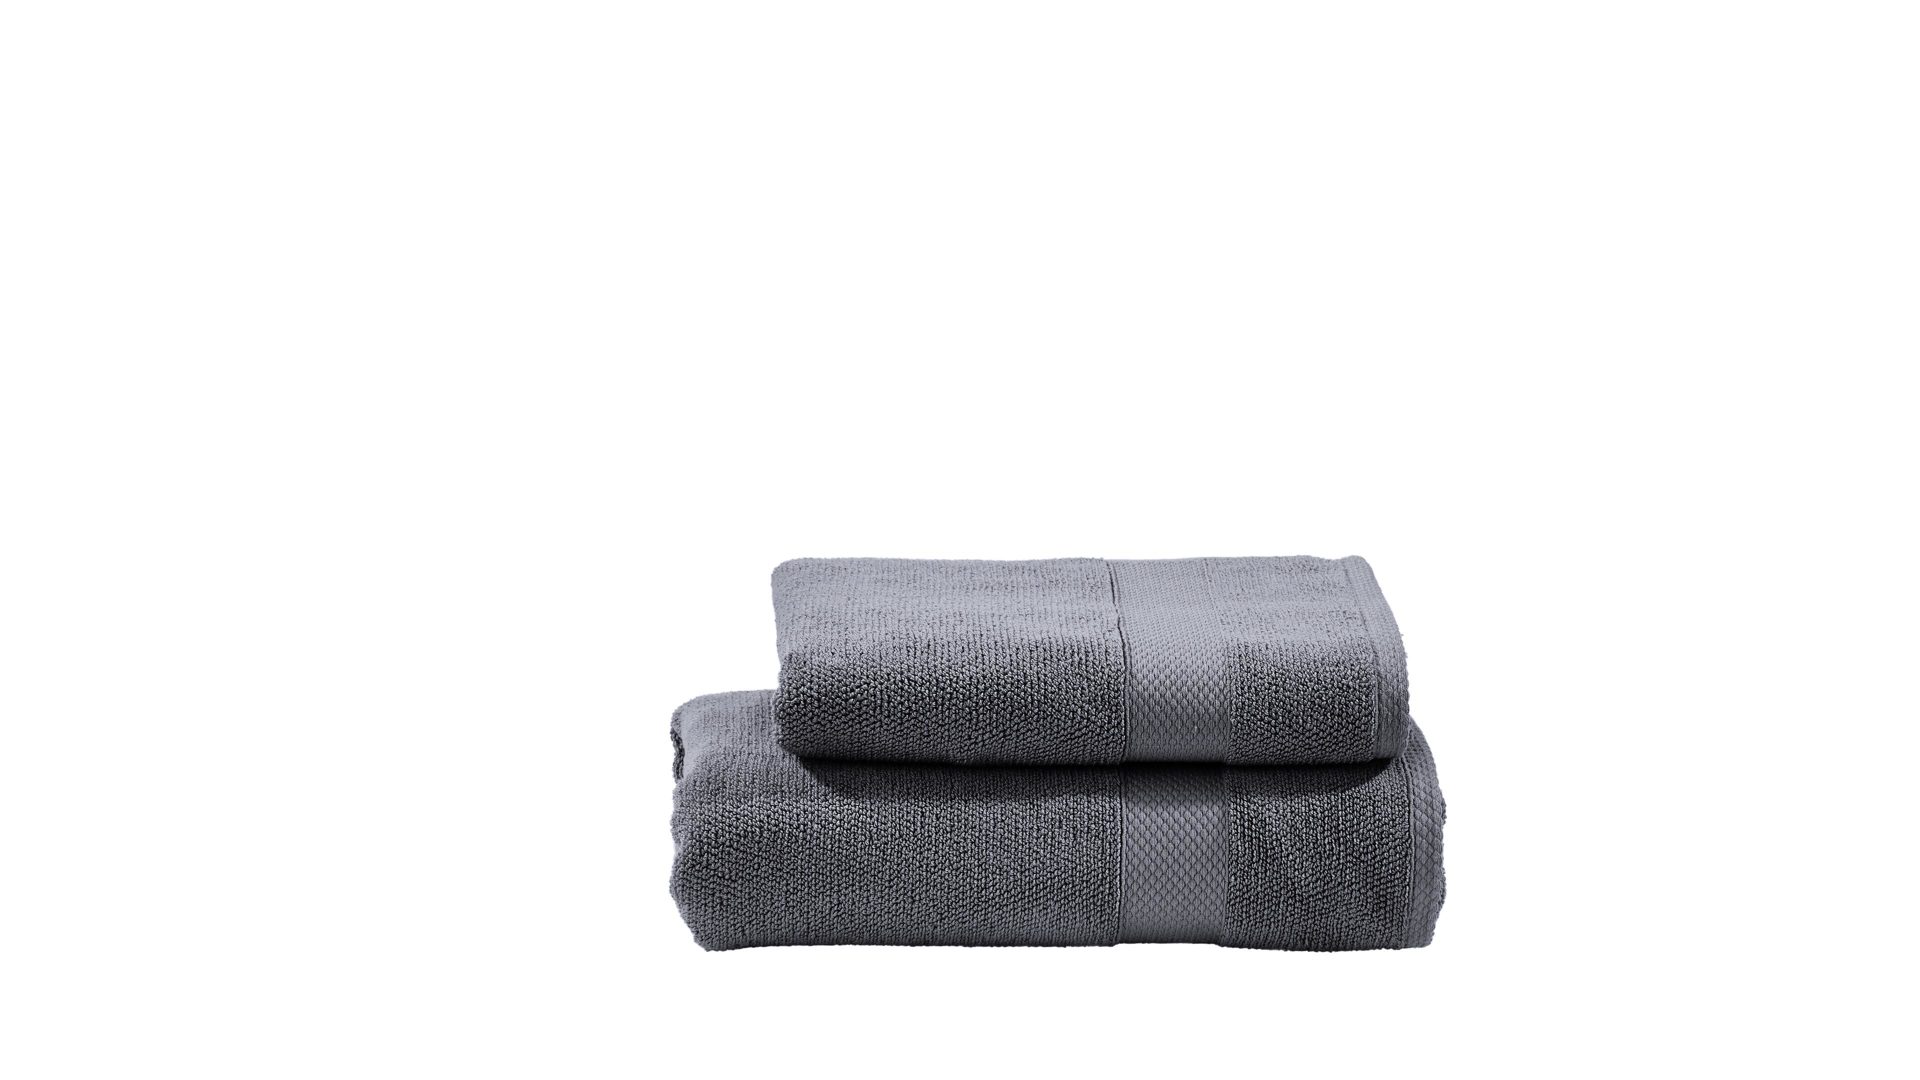 Handtuch-Set Done.® aus Stoff in Anthrazit done.® Handtuch-Set Deluxe - exklusive Heimtextilien anthrazitfarbene Baumwolle – zweiteilig